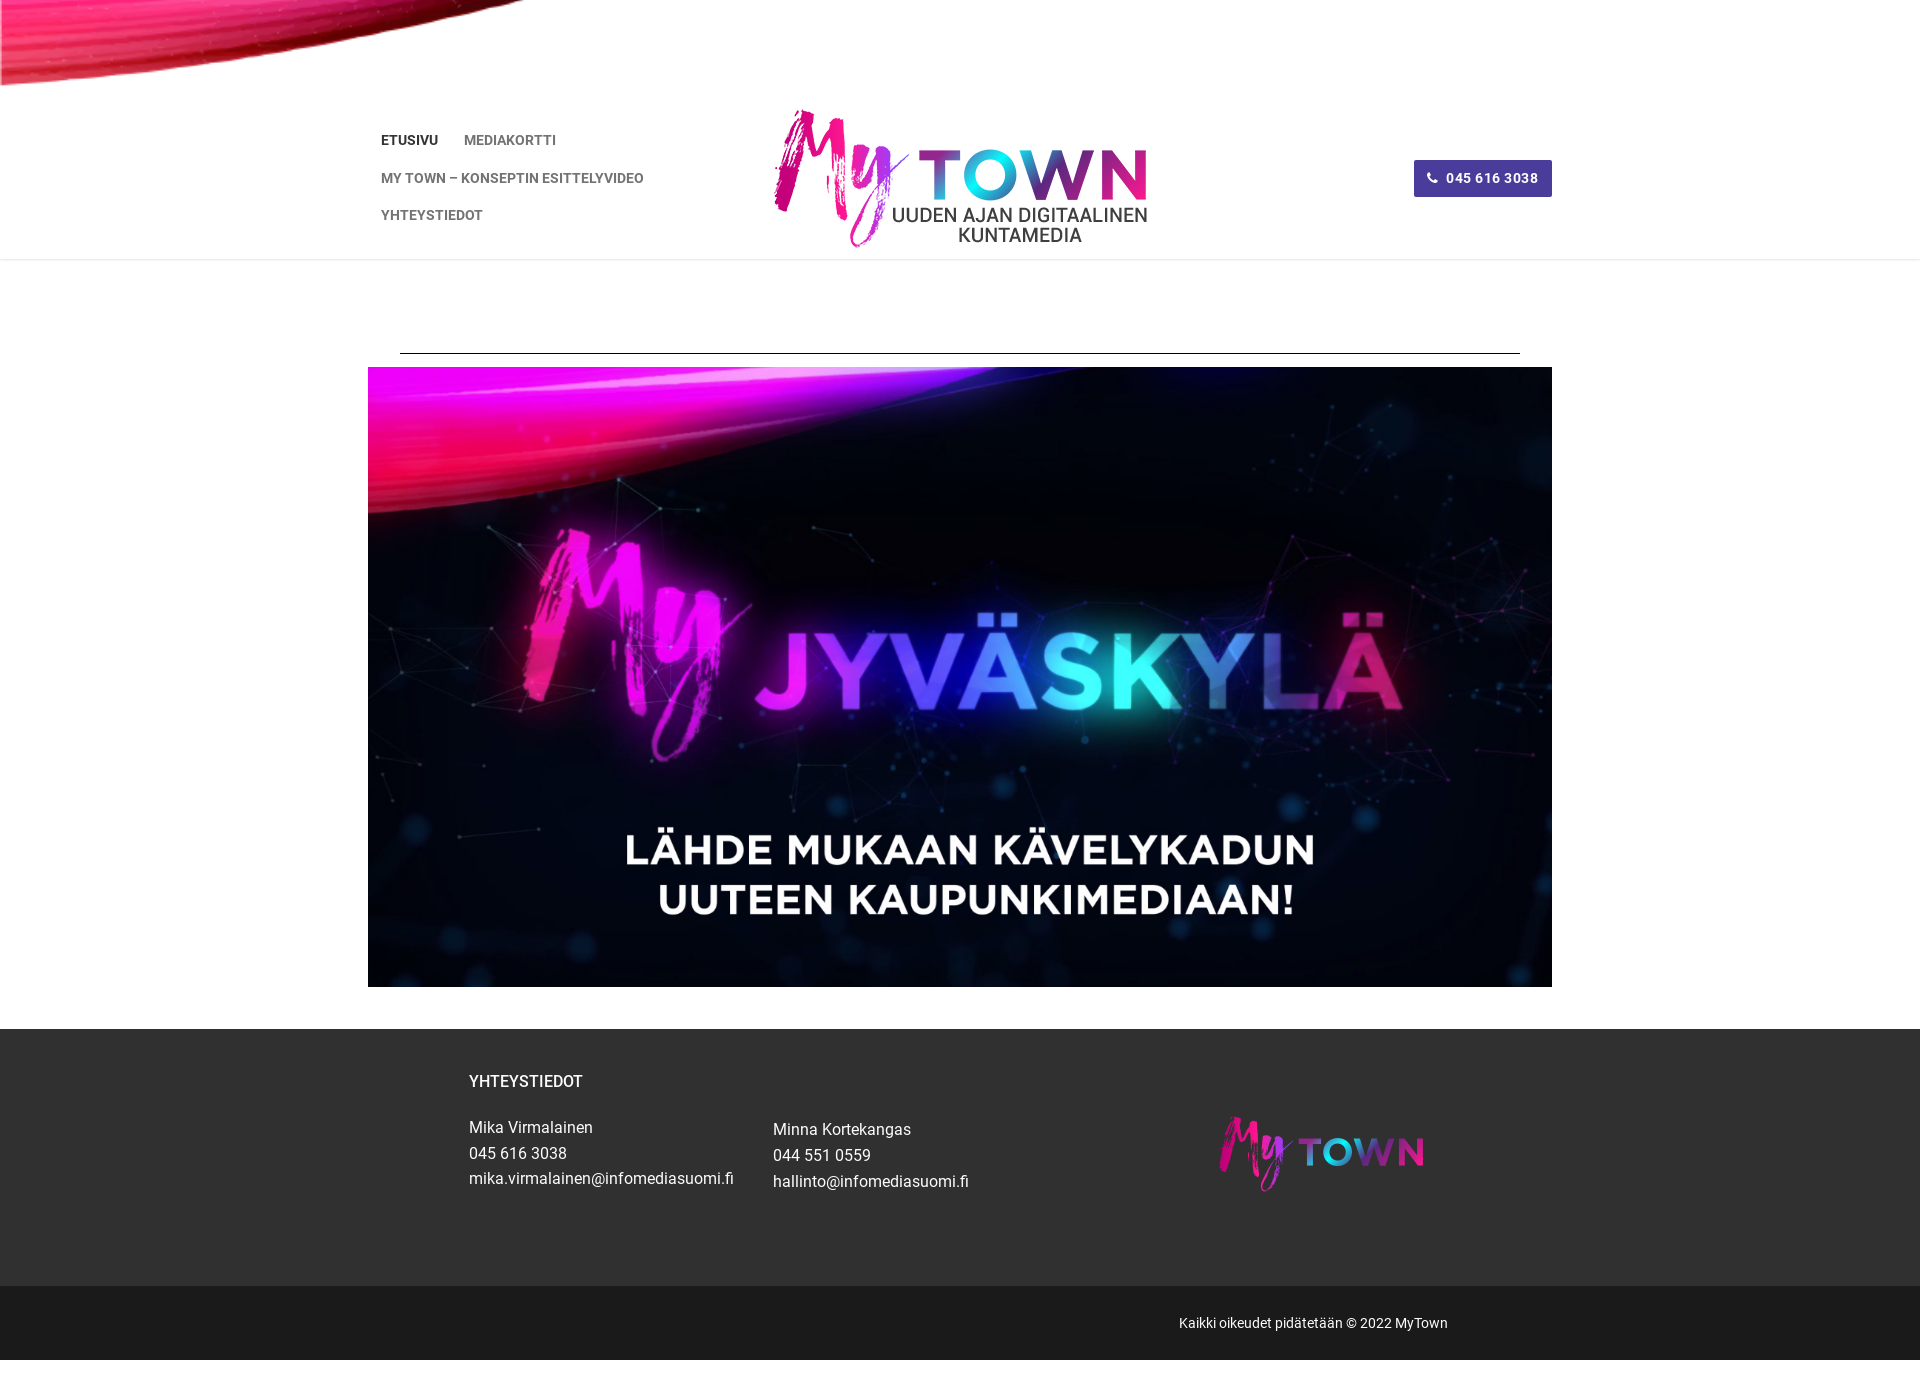 Näyttökuva mytown.fi